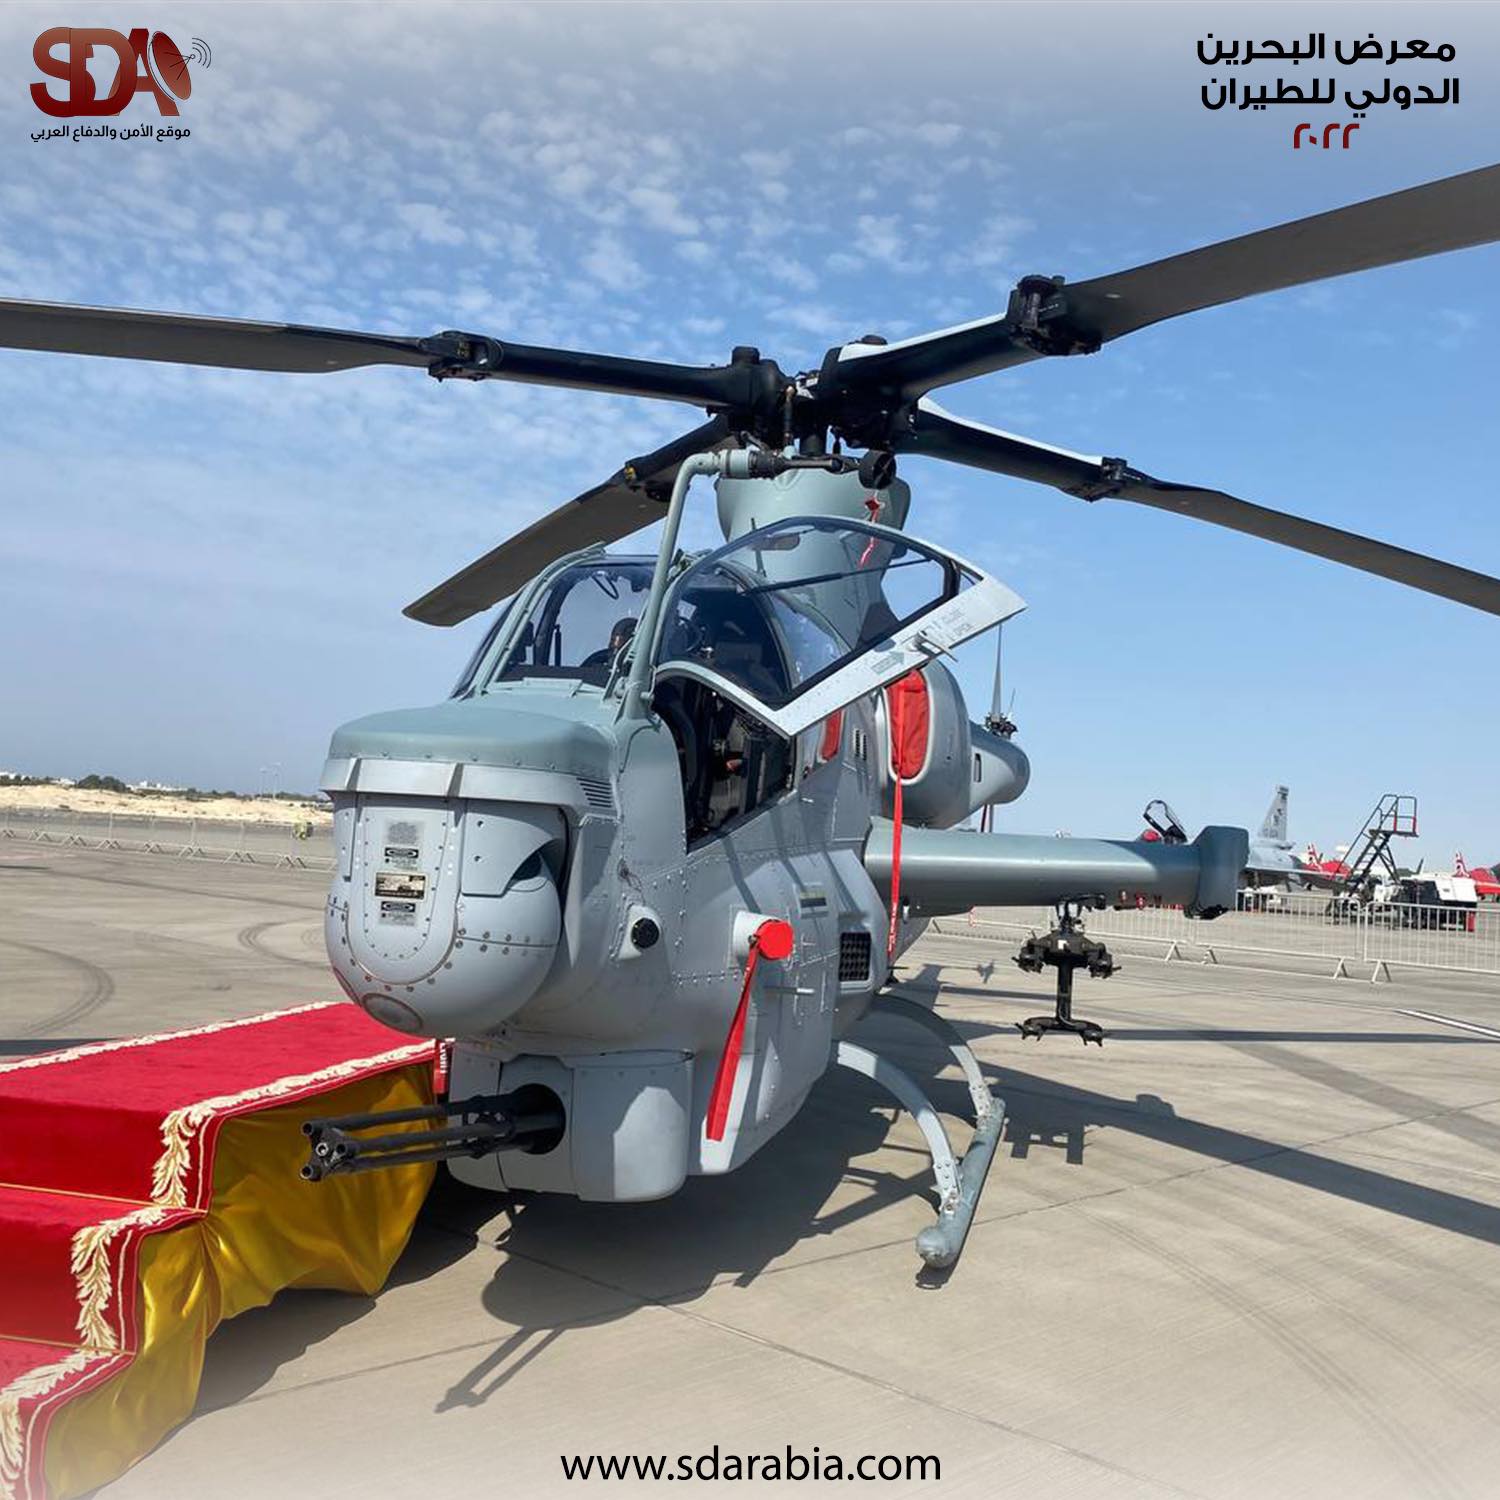 مروحية AH-1Z Viper التابعة لسلاح الجو الملكي البحريني